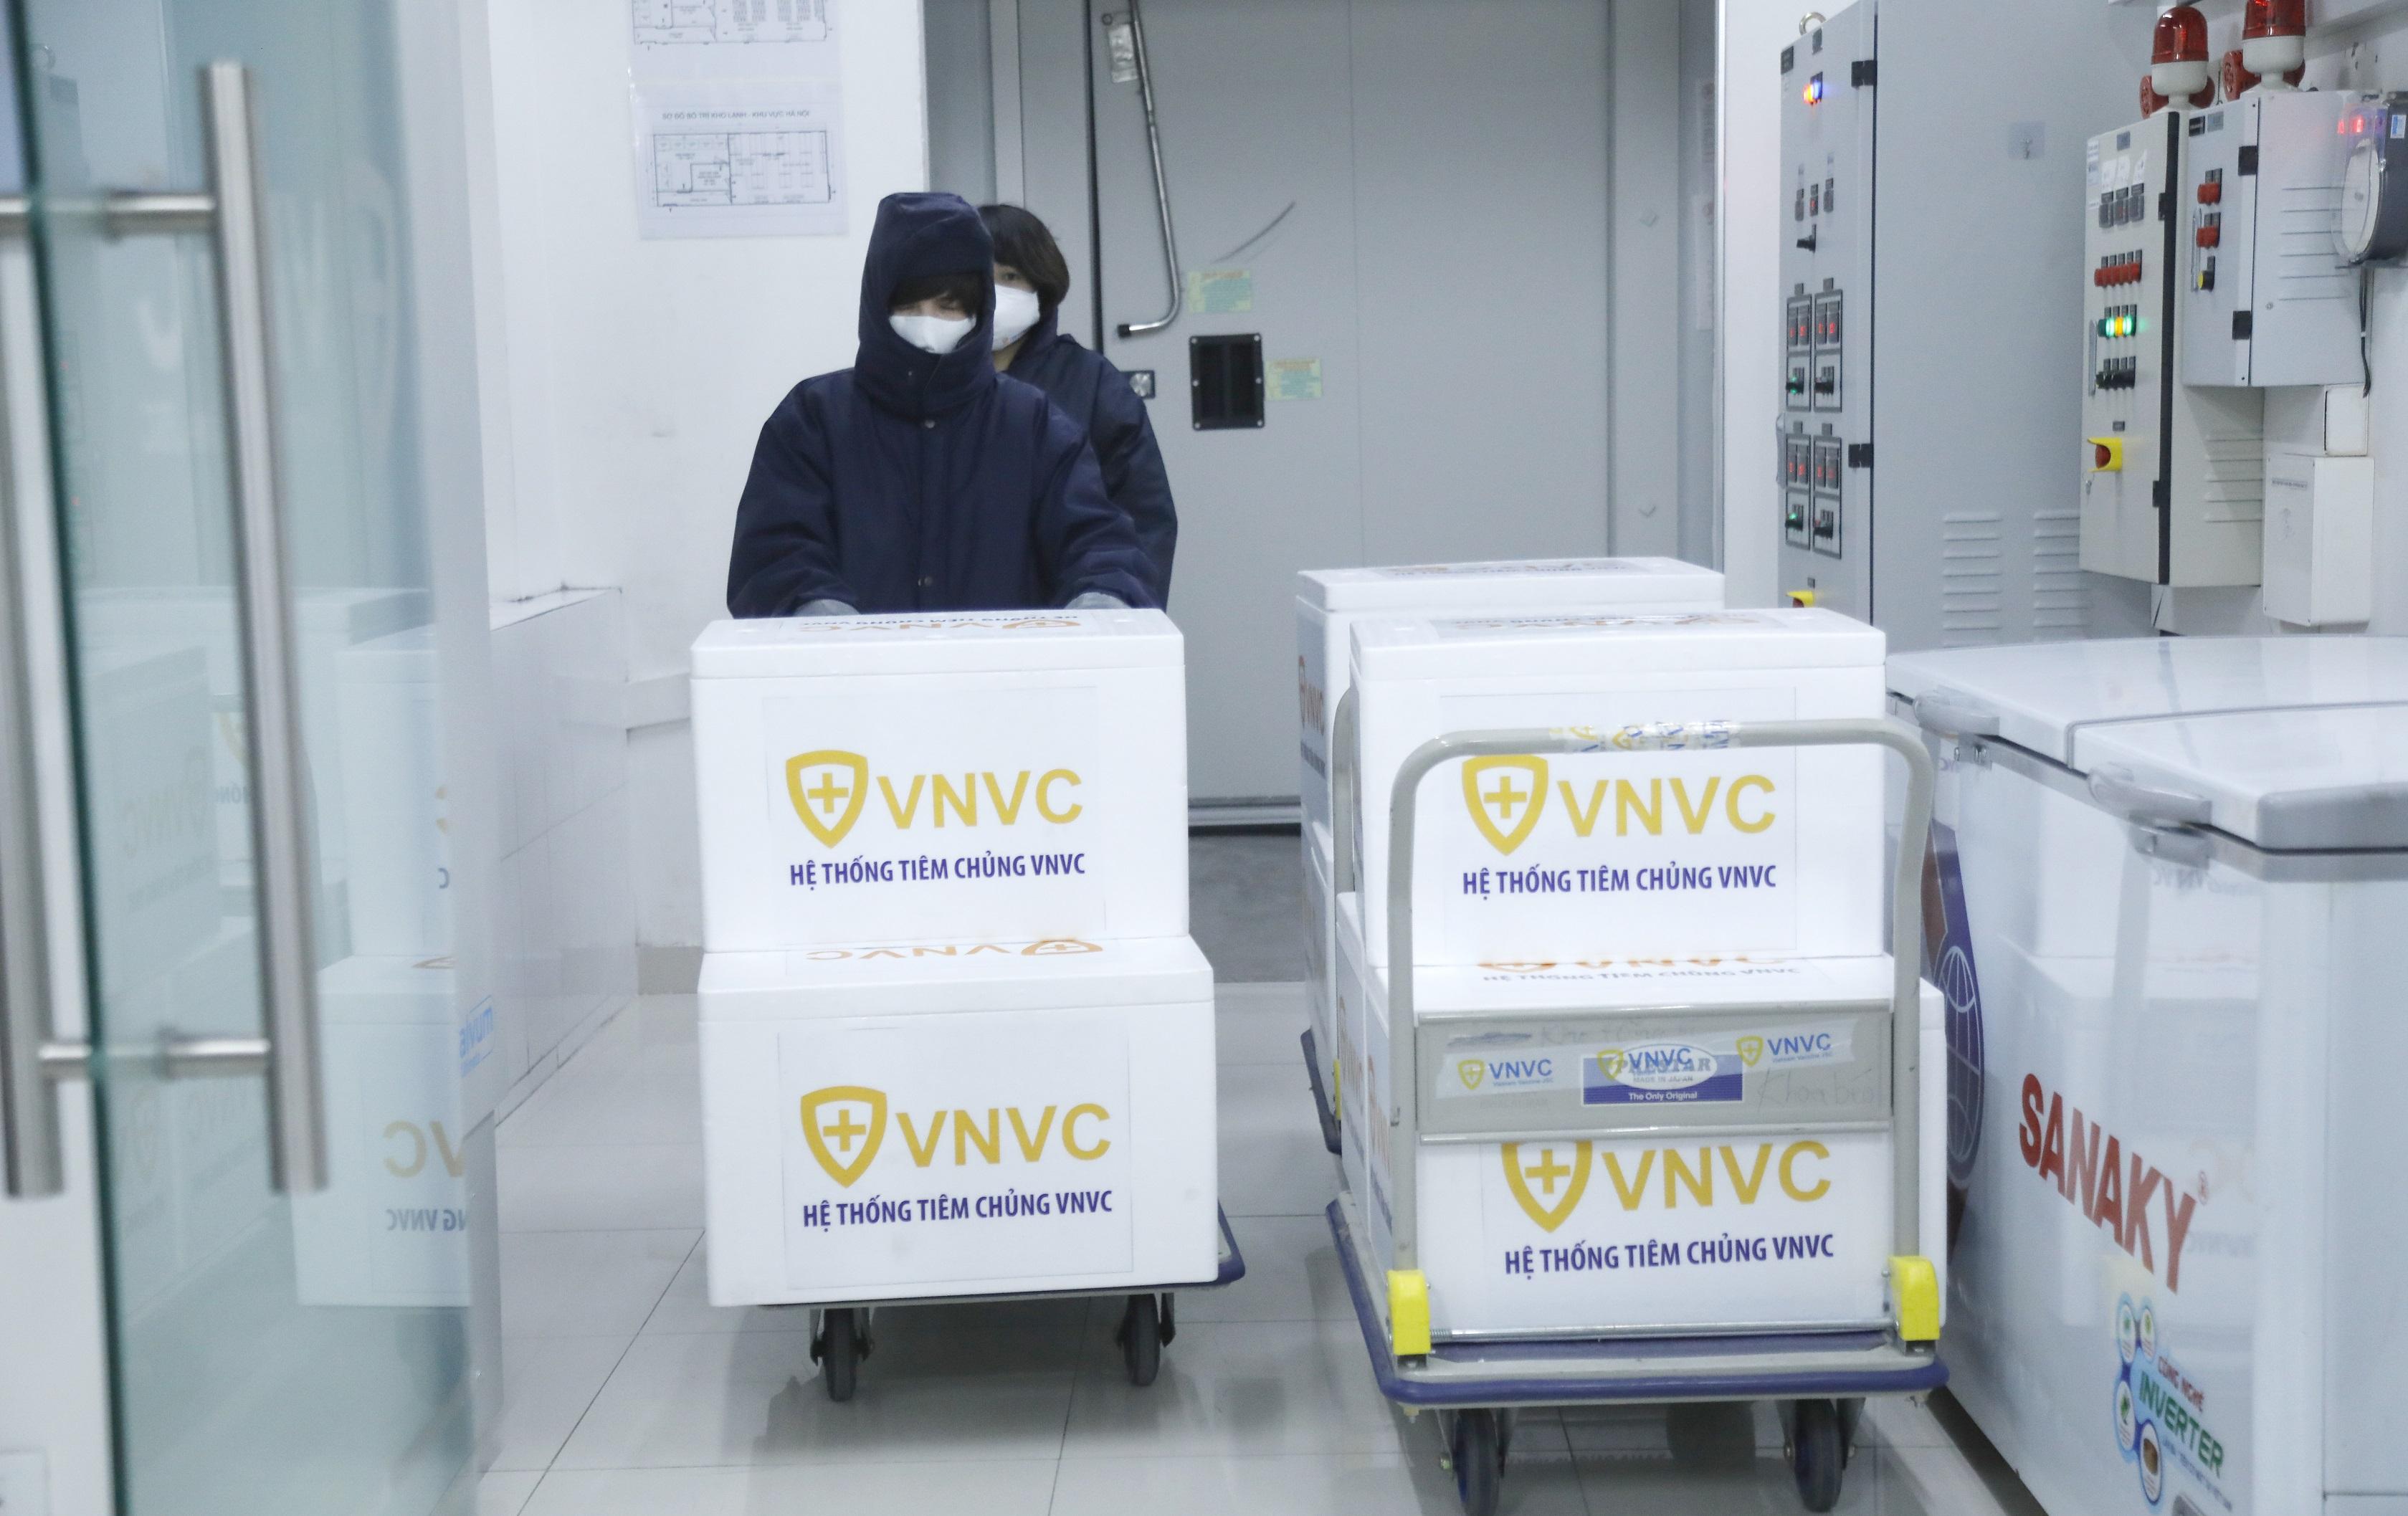 Vacxin được bảo quản trong kho của VNVC.